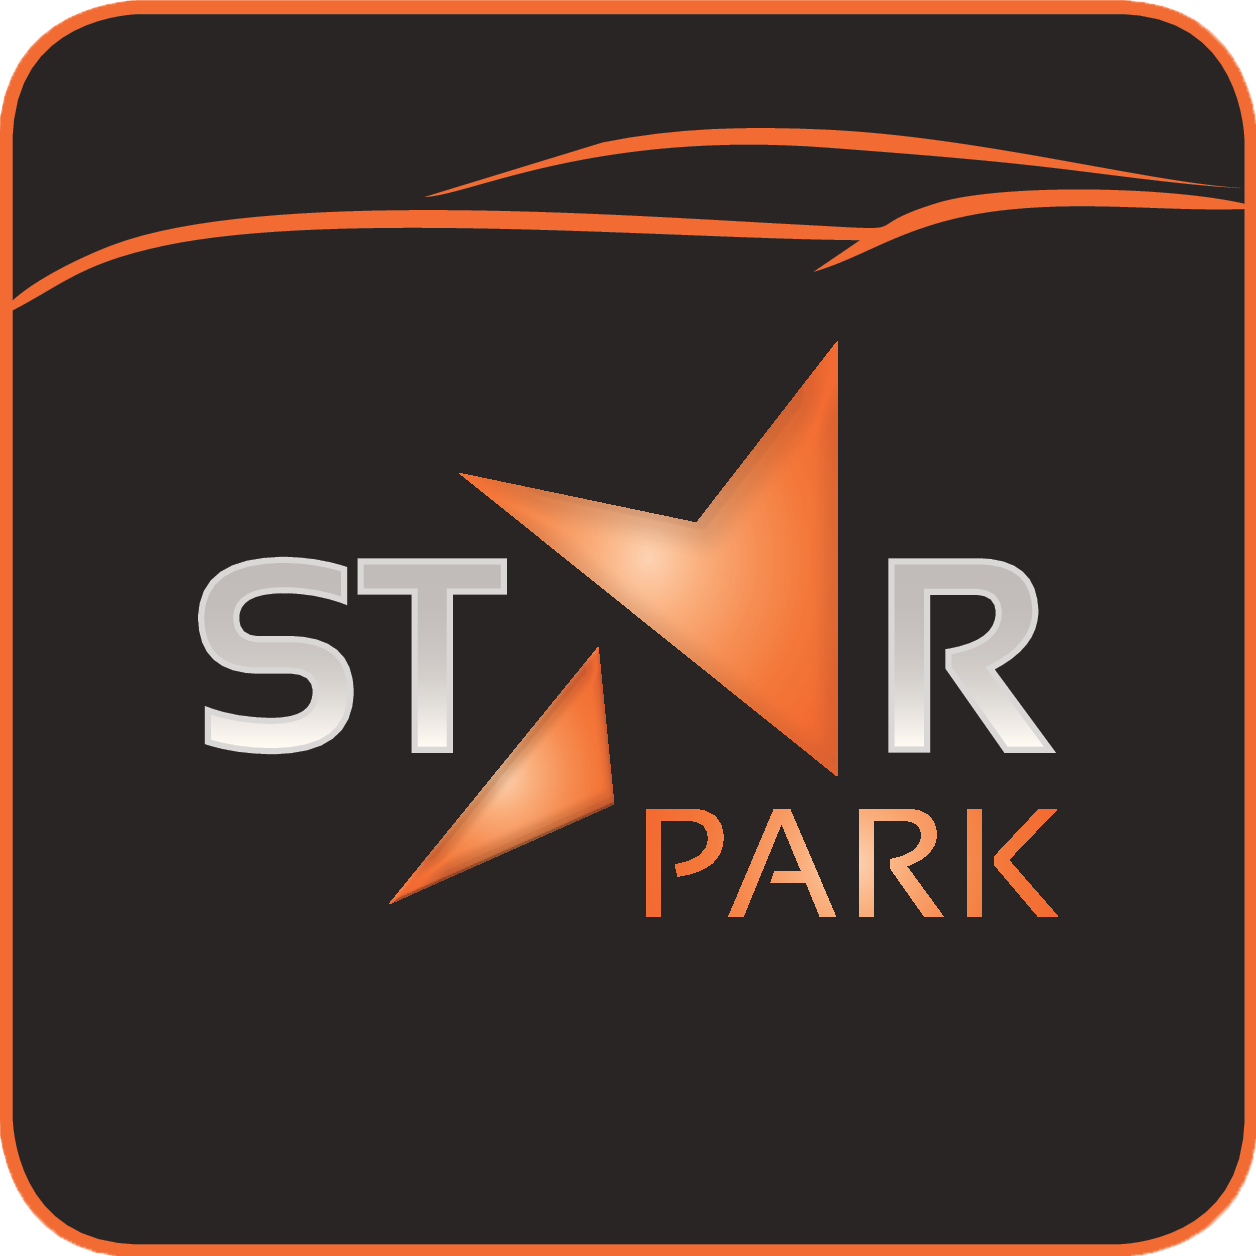 Star Park Group